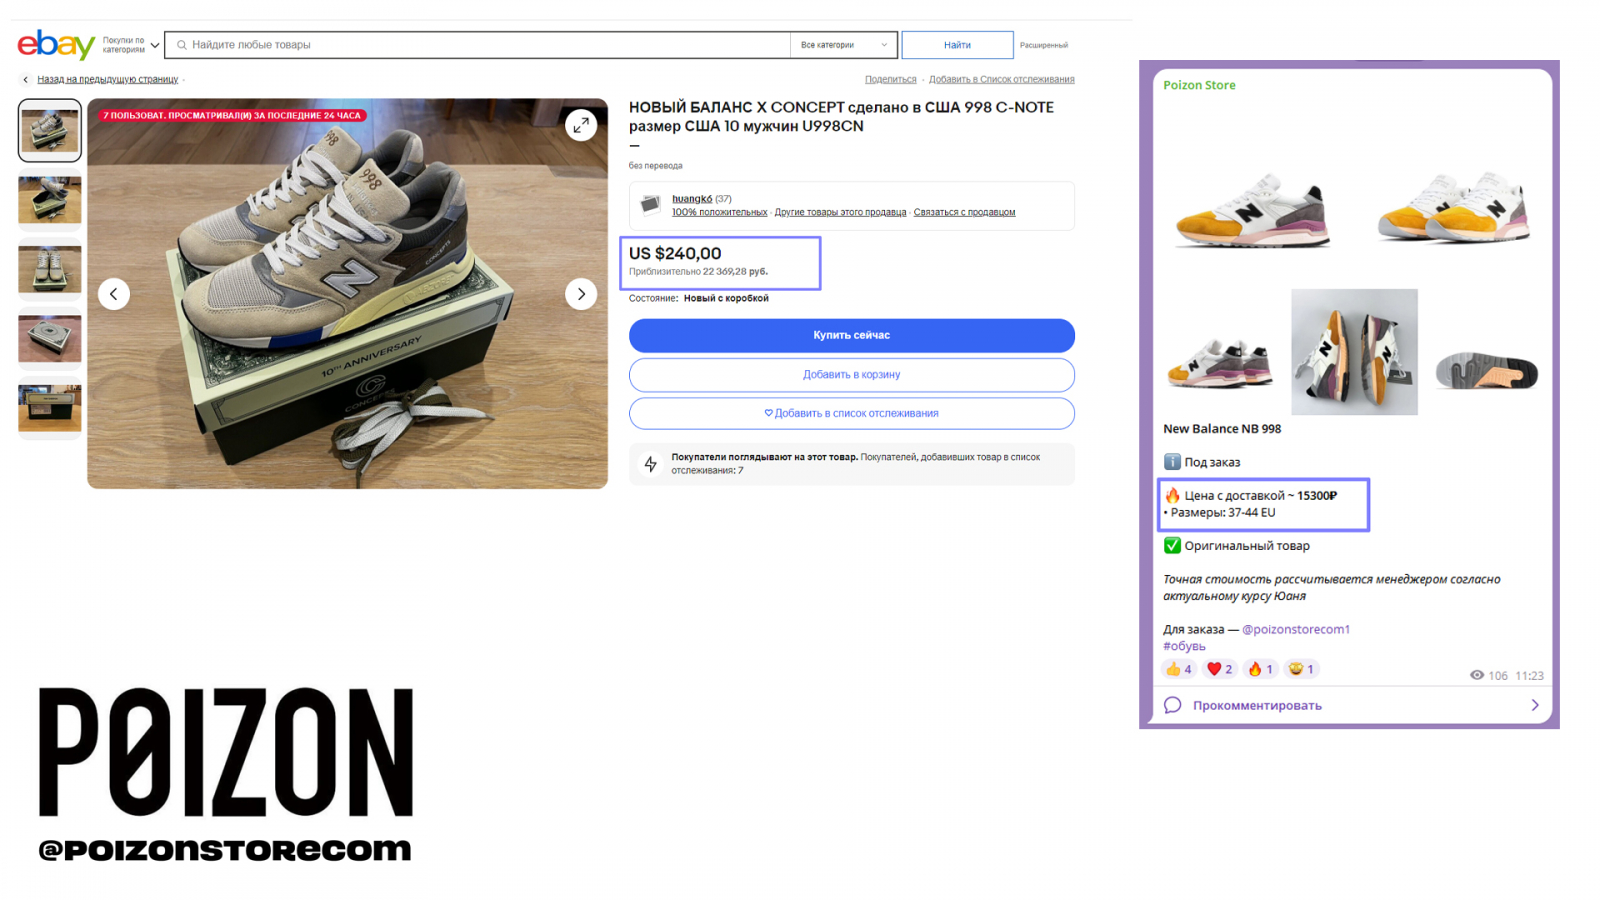 Сравнение стоимости кроссовок на любом сайте и на сайте Poizone (Пойзон)